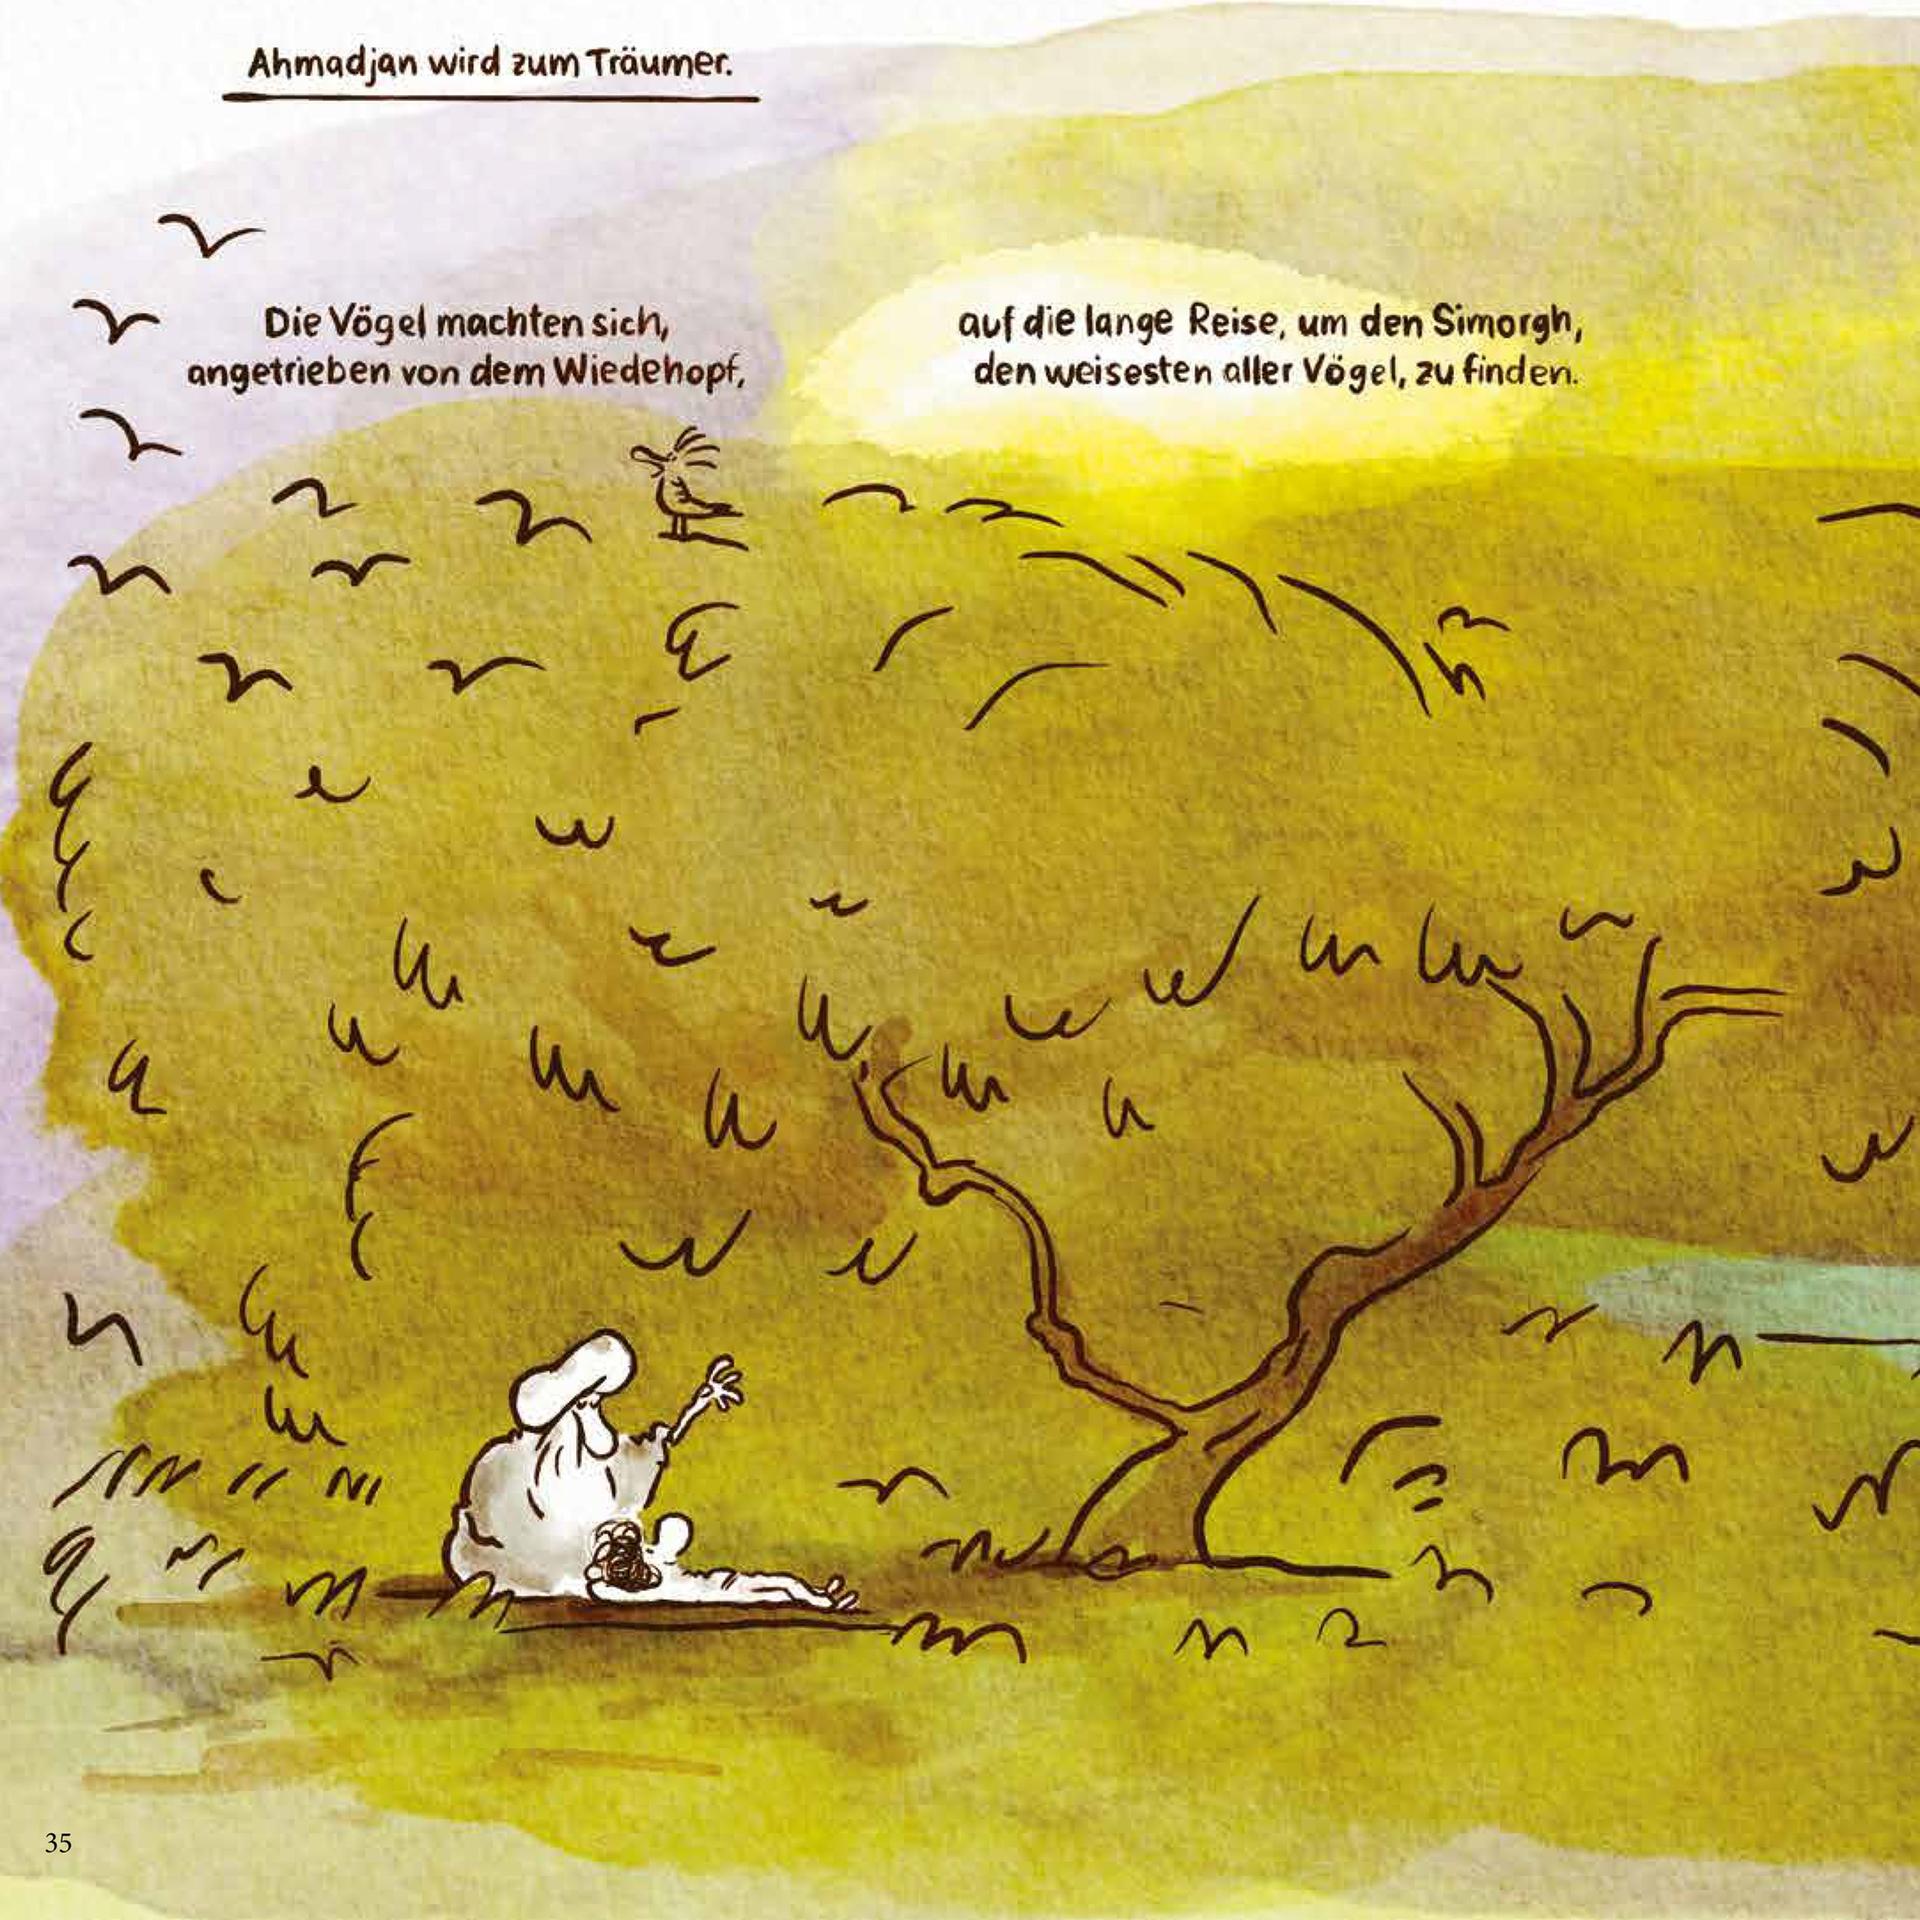 Eine Seite aus "Ahmadjan und der Wiedehopf", ein Comic von Maren und Ahmadjan Amini.